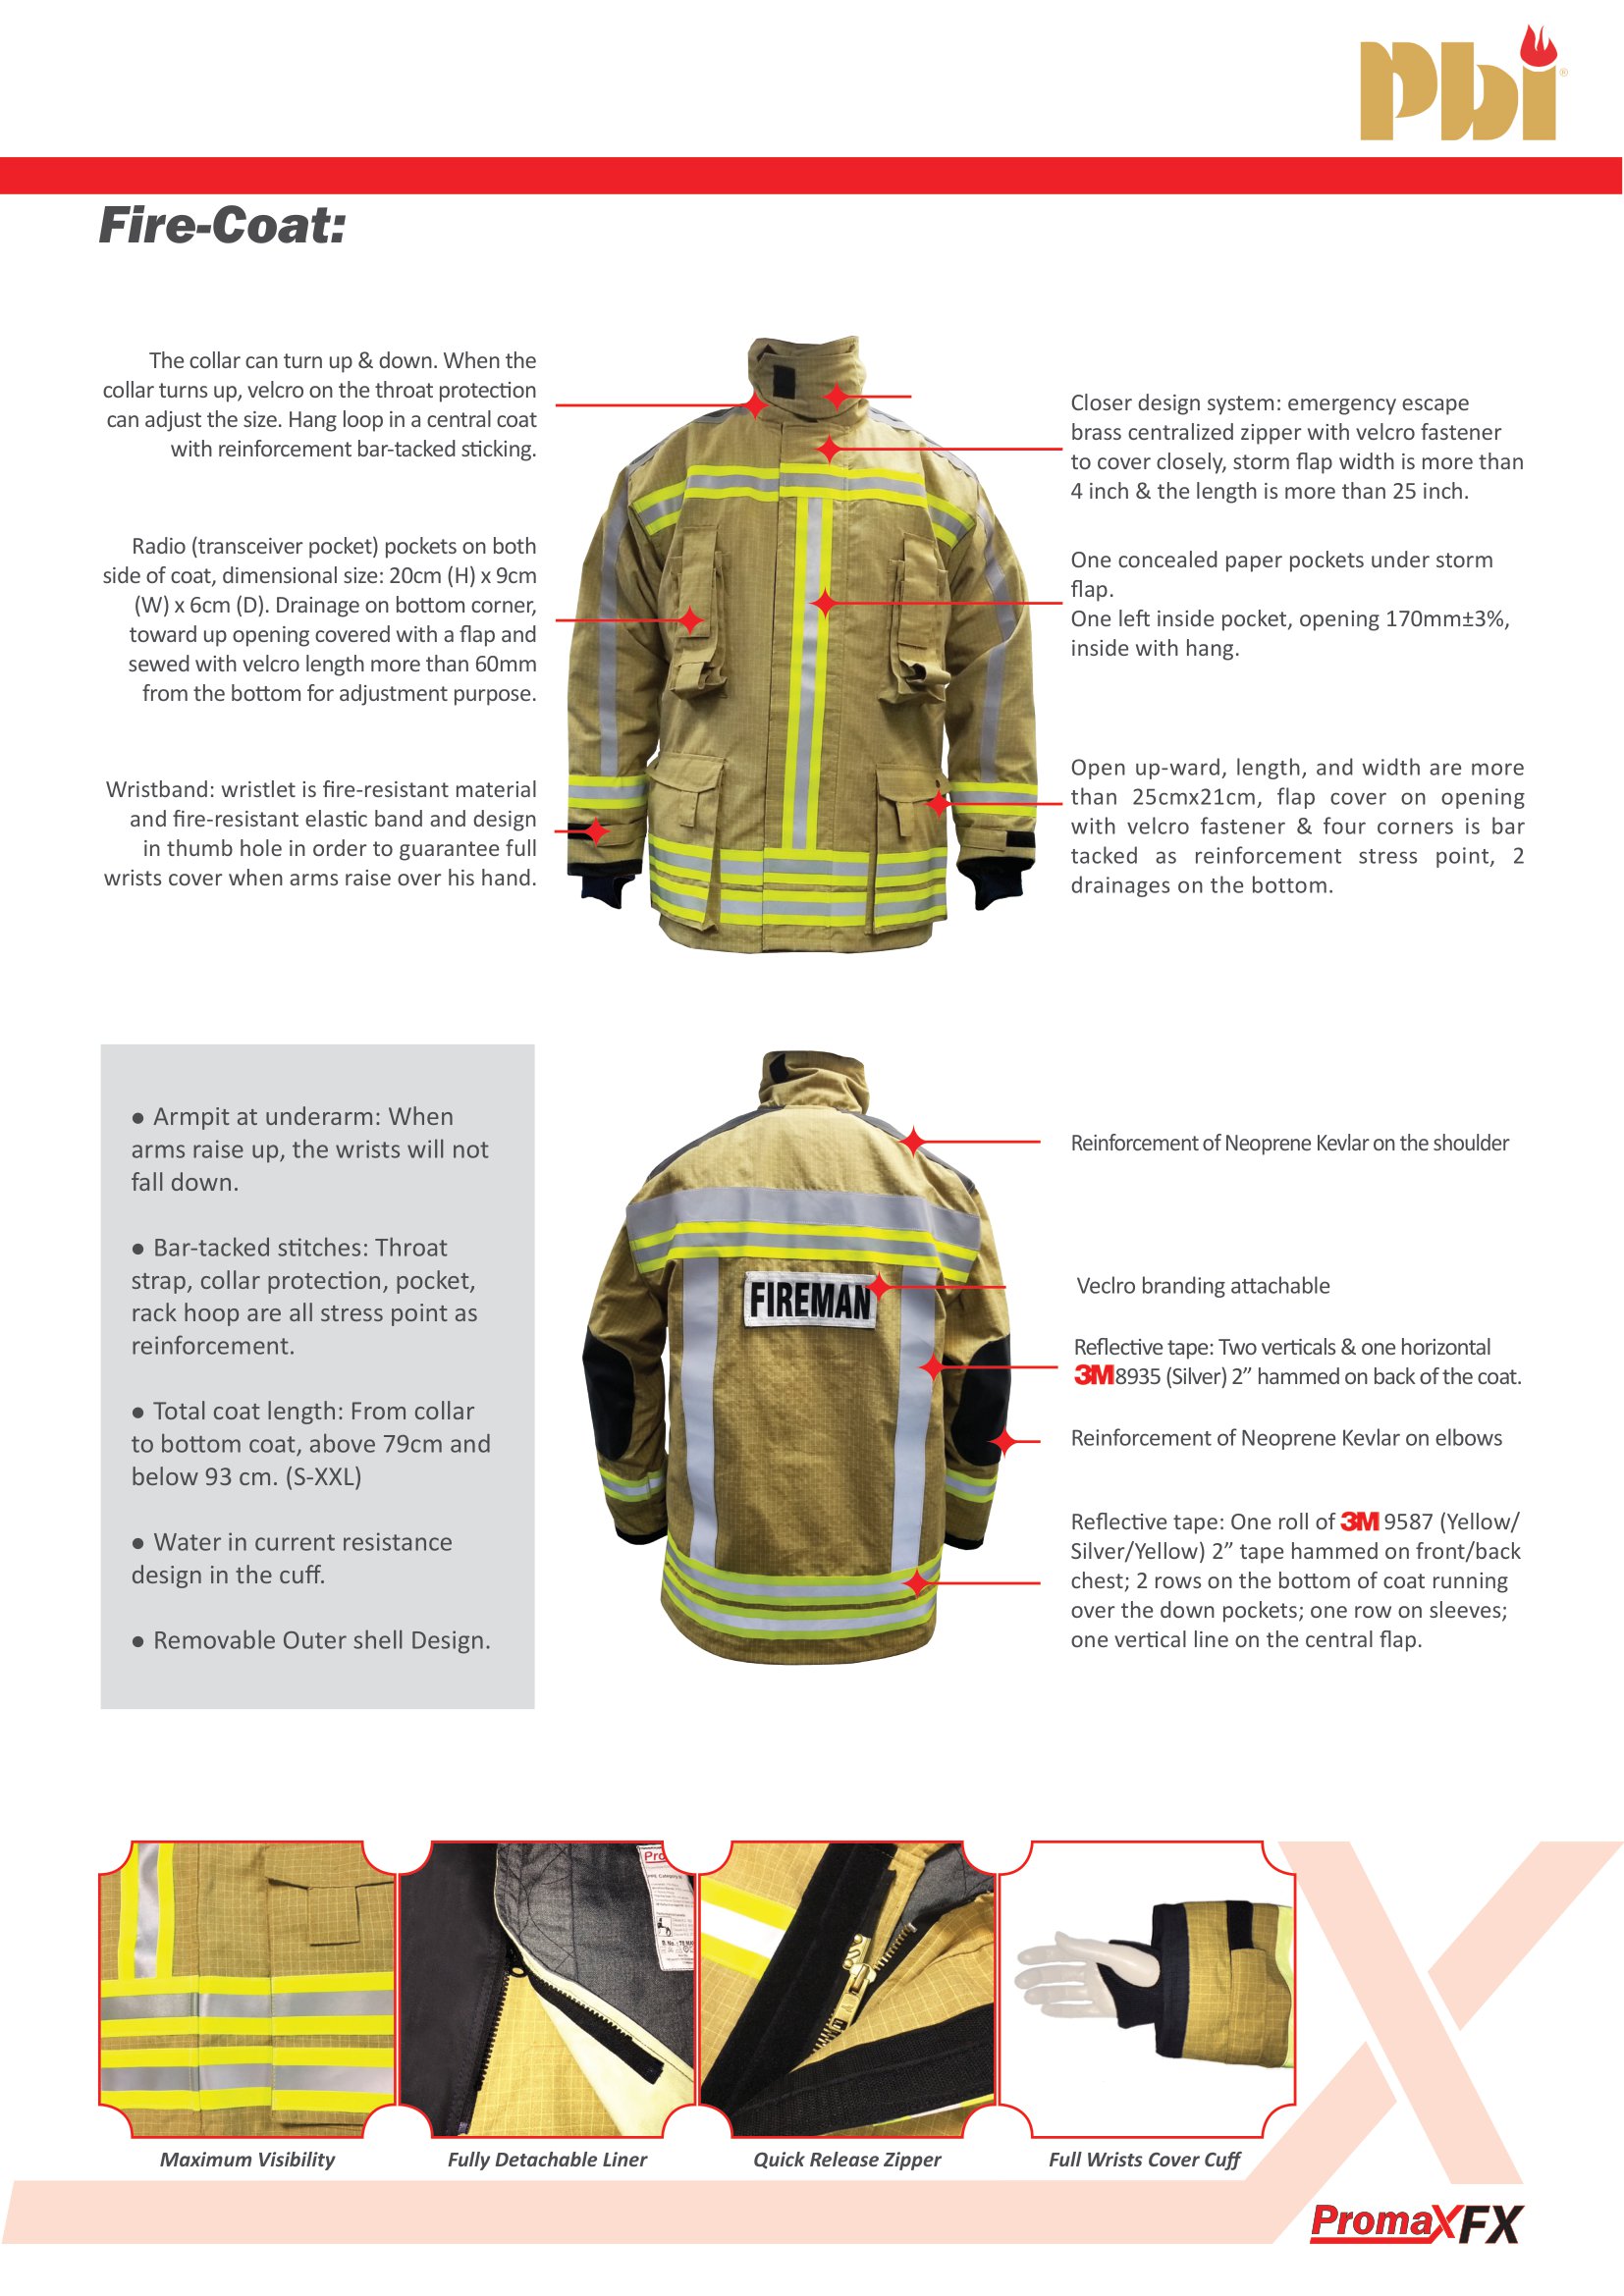 کاتالوگ لباس آتش نشانی Promax Fx